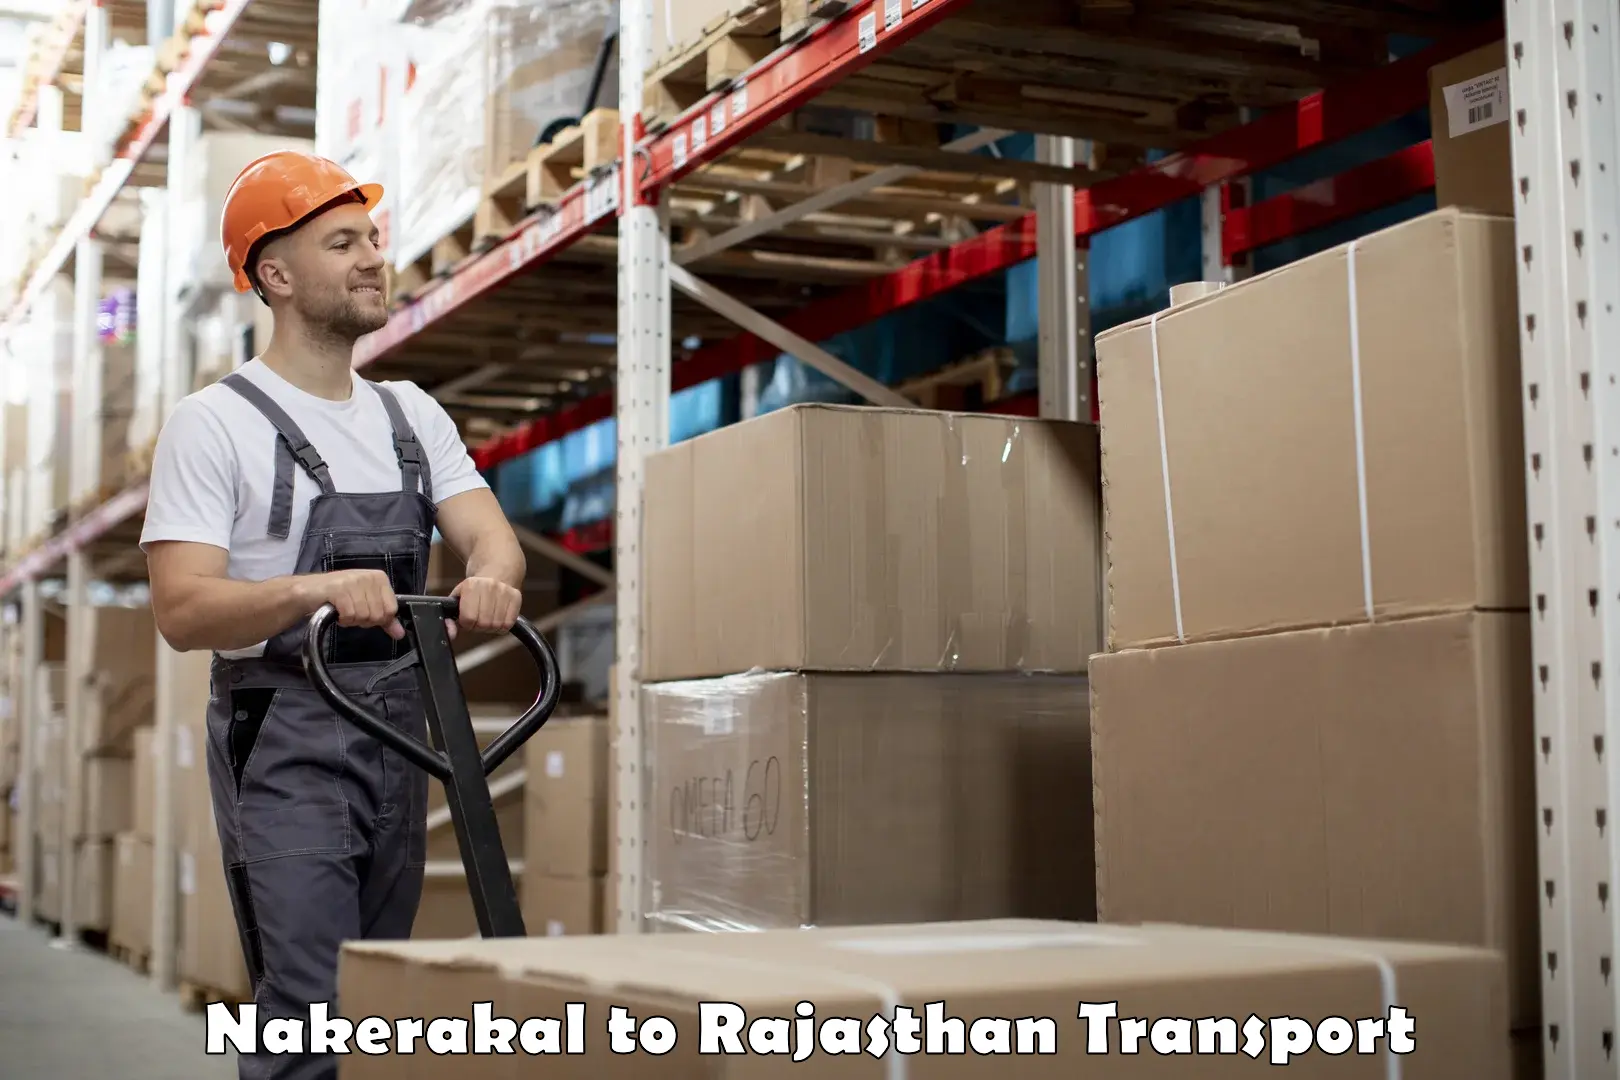 Furniture transport service Nakerakal to Rawatsar